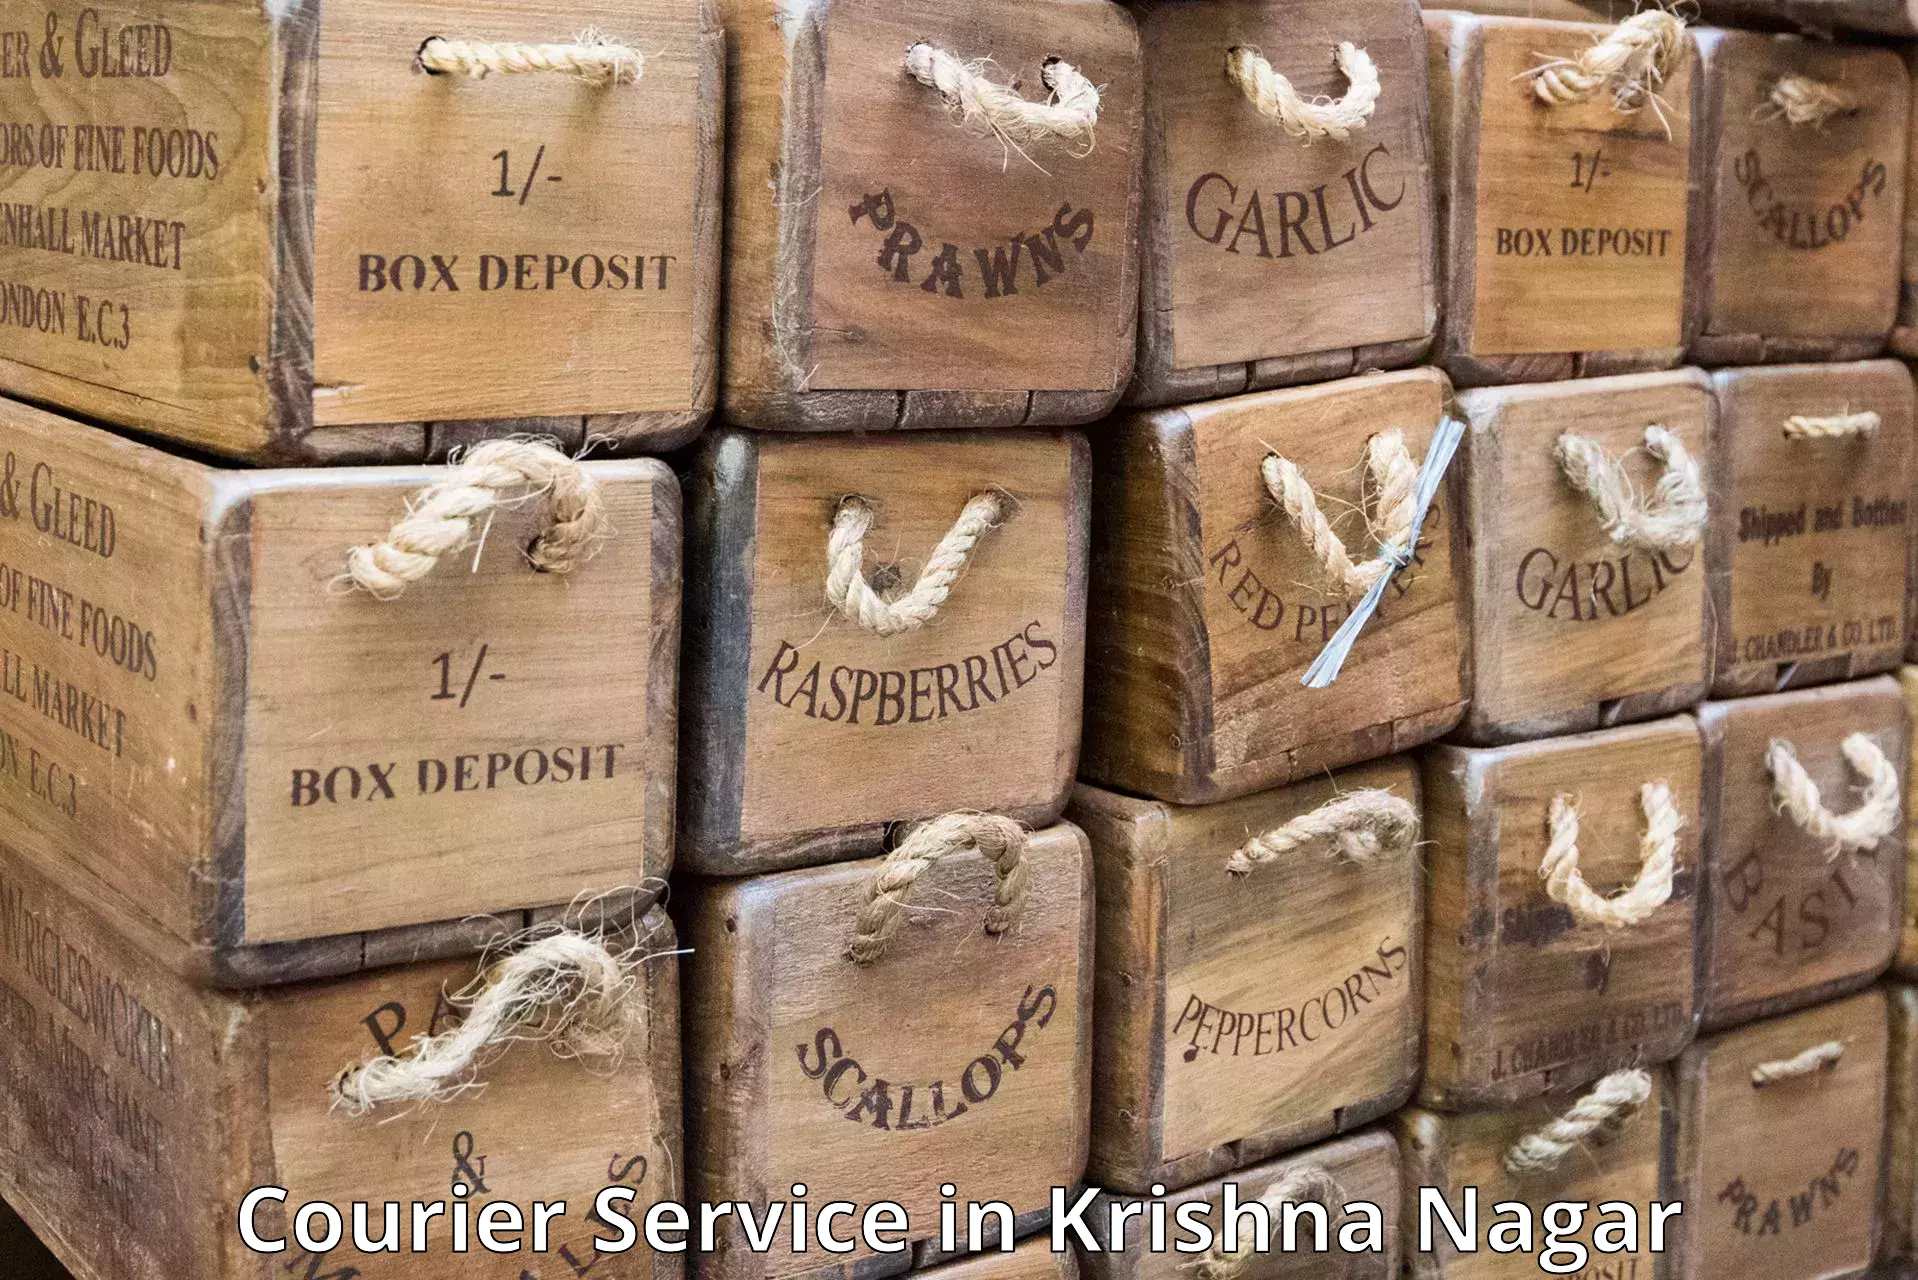 Efficient cargo handling in Krishna Nagar